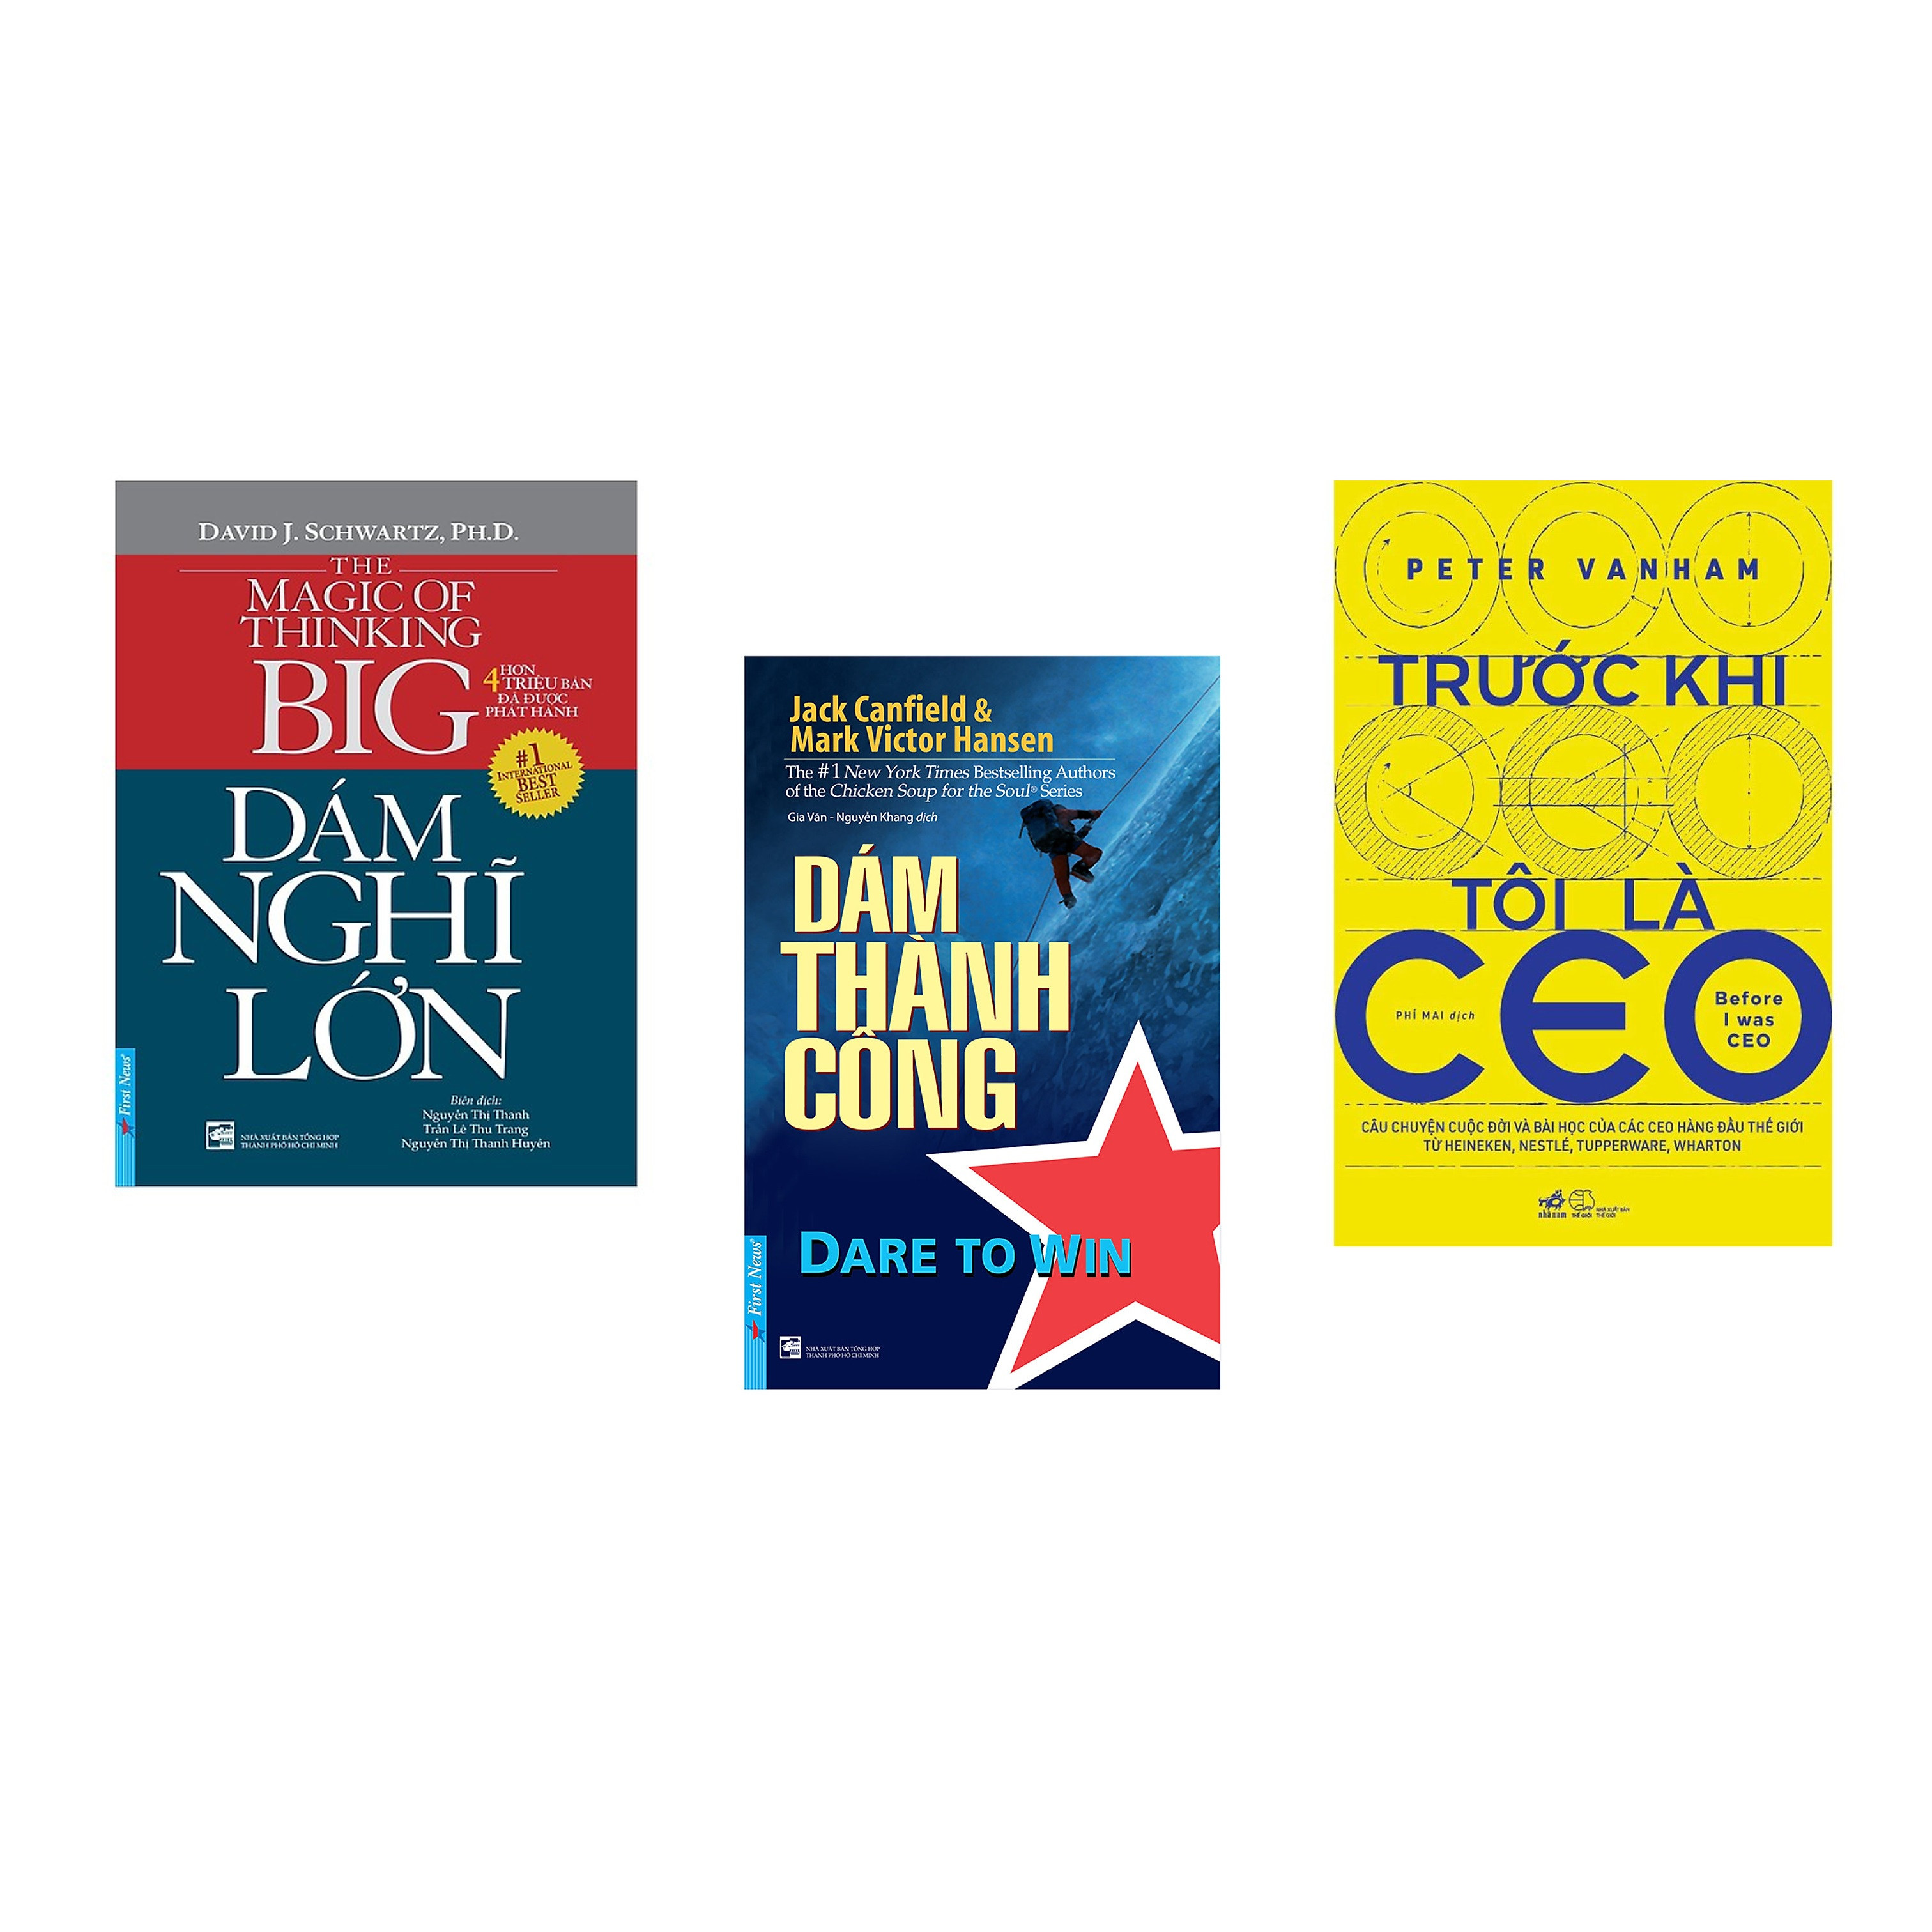 Hình ảnh Combo 3 cuốn sách: Dám Nghĩ Lớn + Dám Thành Công + Trước khi tôi là CEO